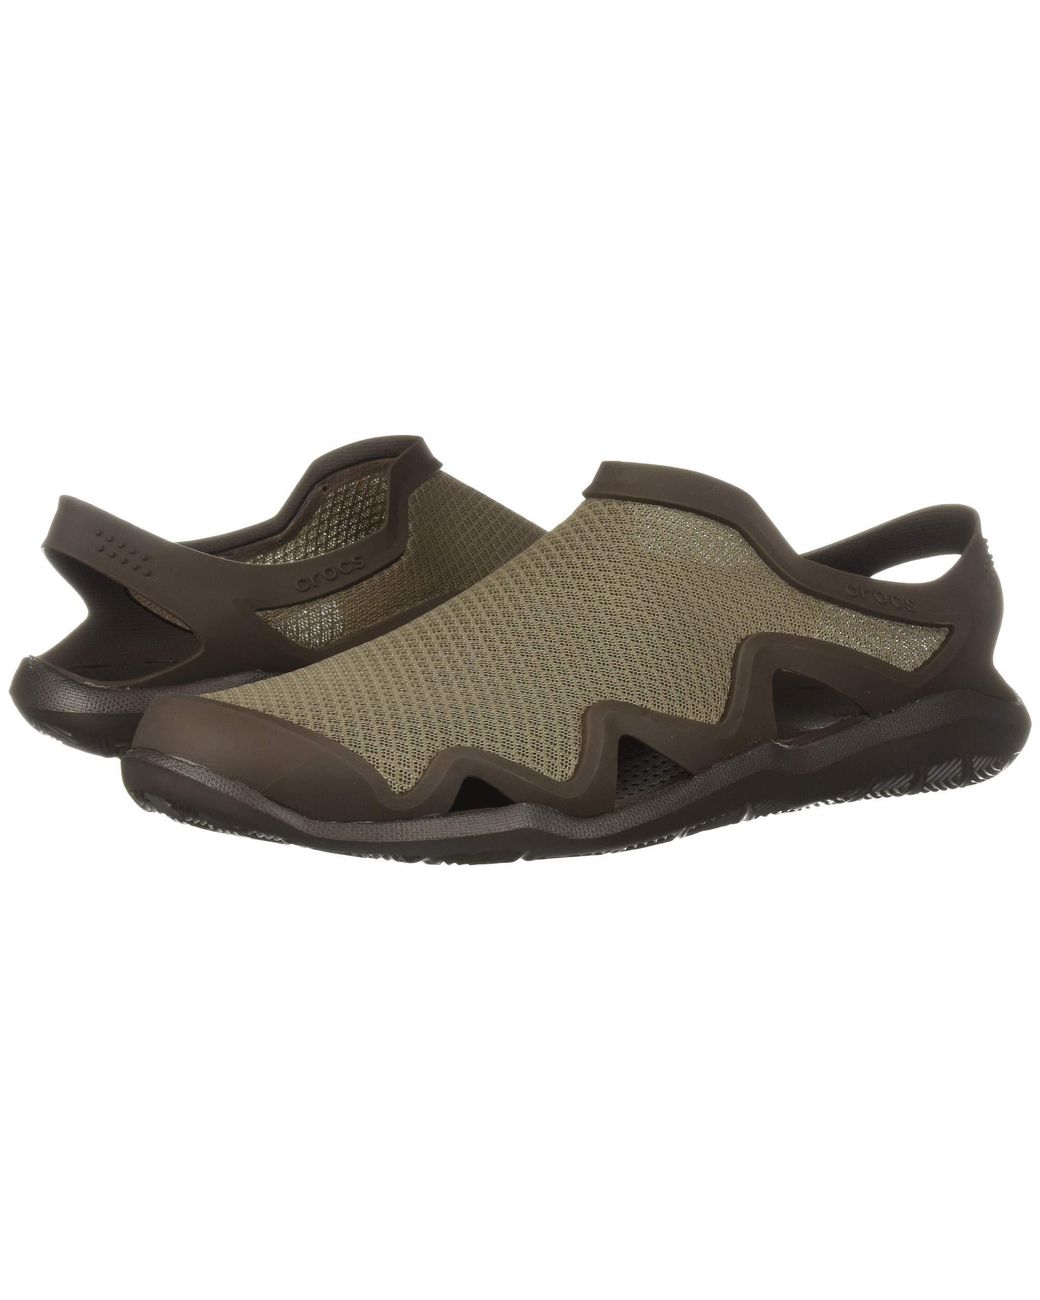 crocs mens closed toe sandals